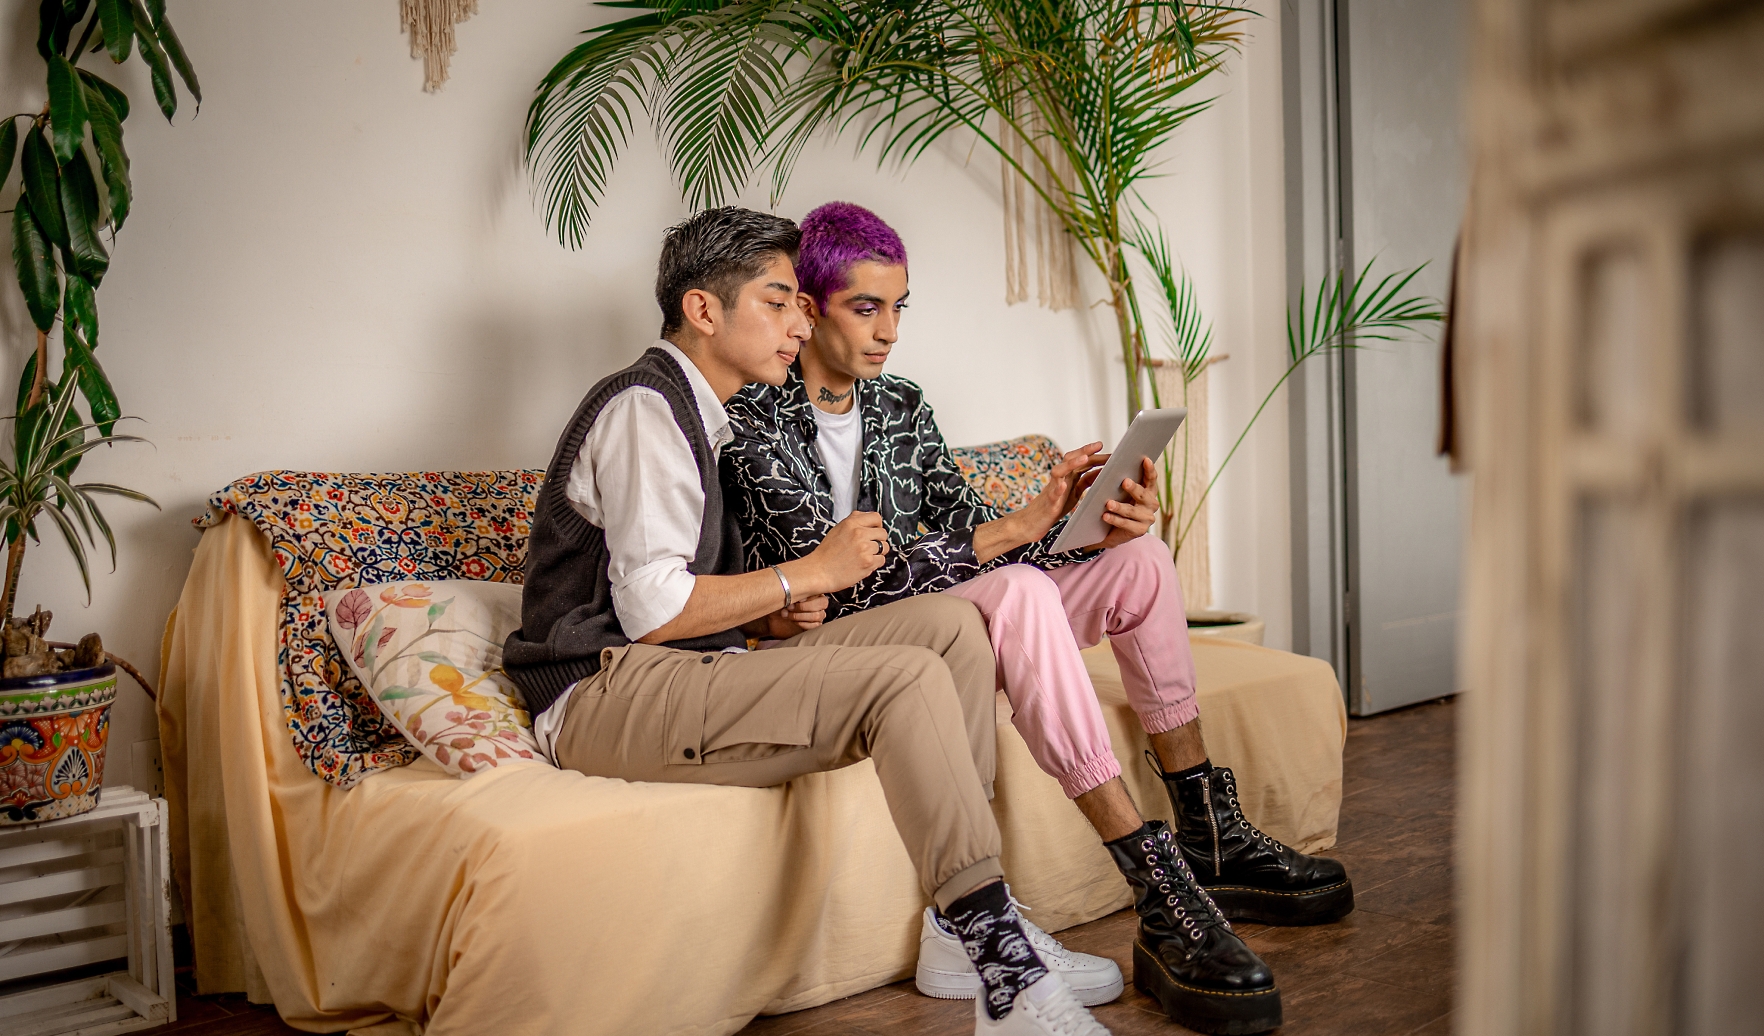 Dos personas sentadas en un sofá mirando una tableta. Una tiene el pelo gris corto y lleva pantalones beige